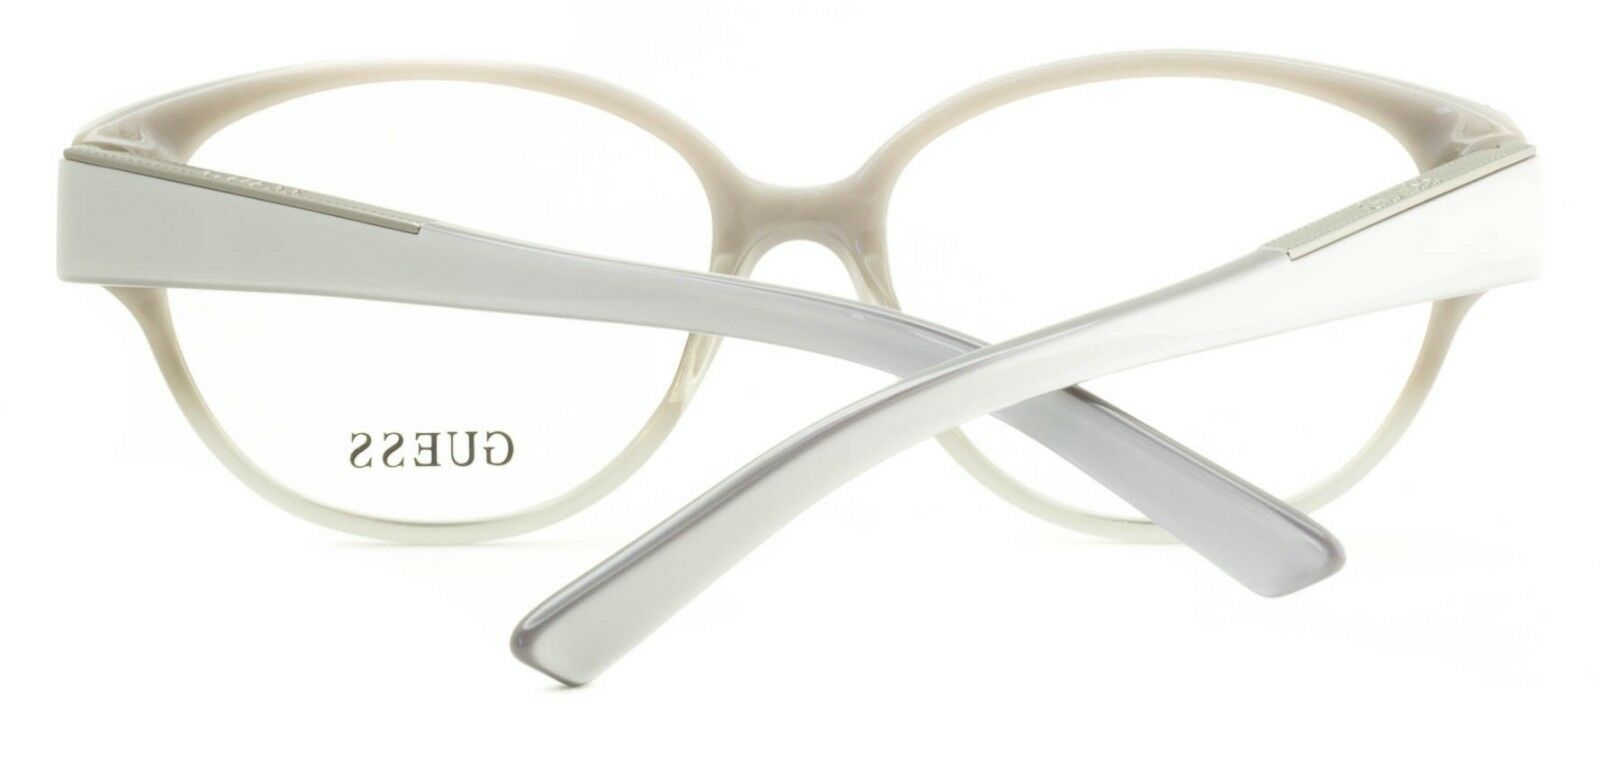 GUESS GU 2394 GRY Eyewear FRAMES Glasses Eyeglasses RX Optical BNIB - TRUSTED